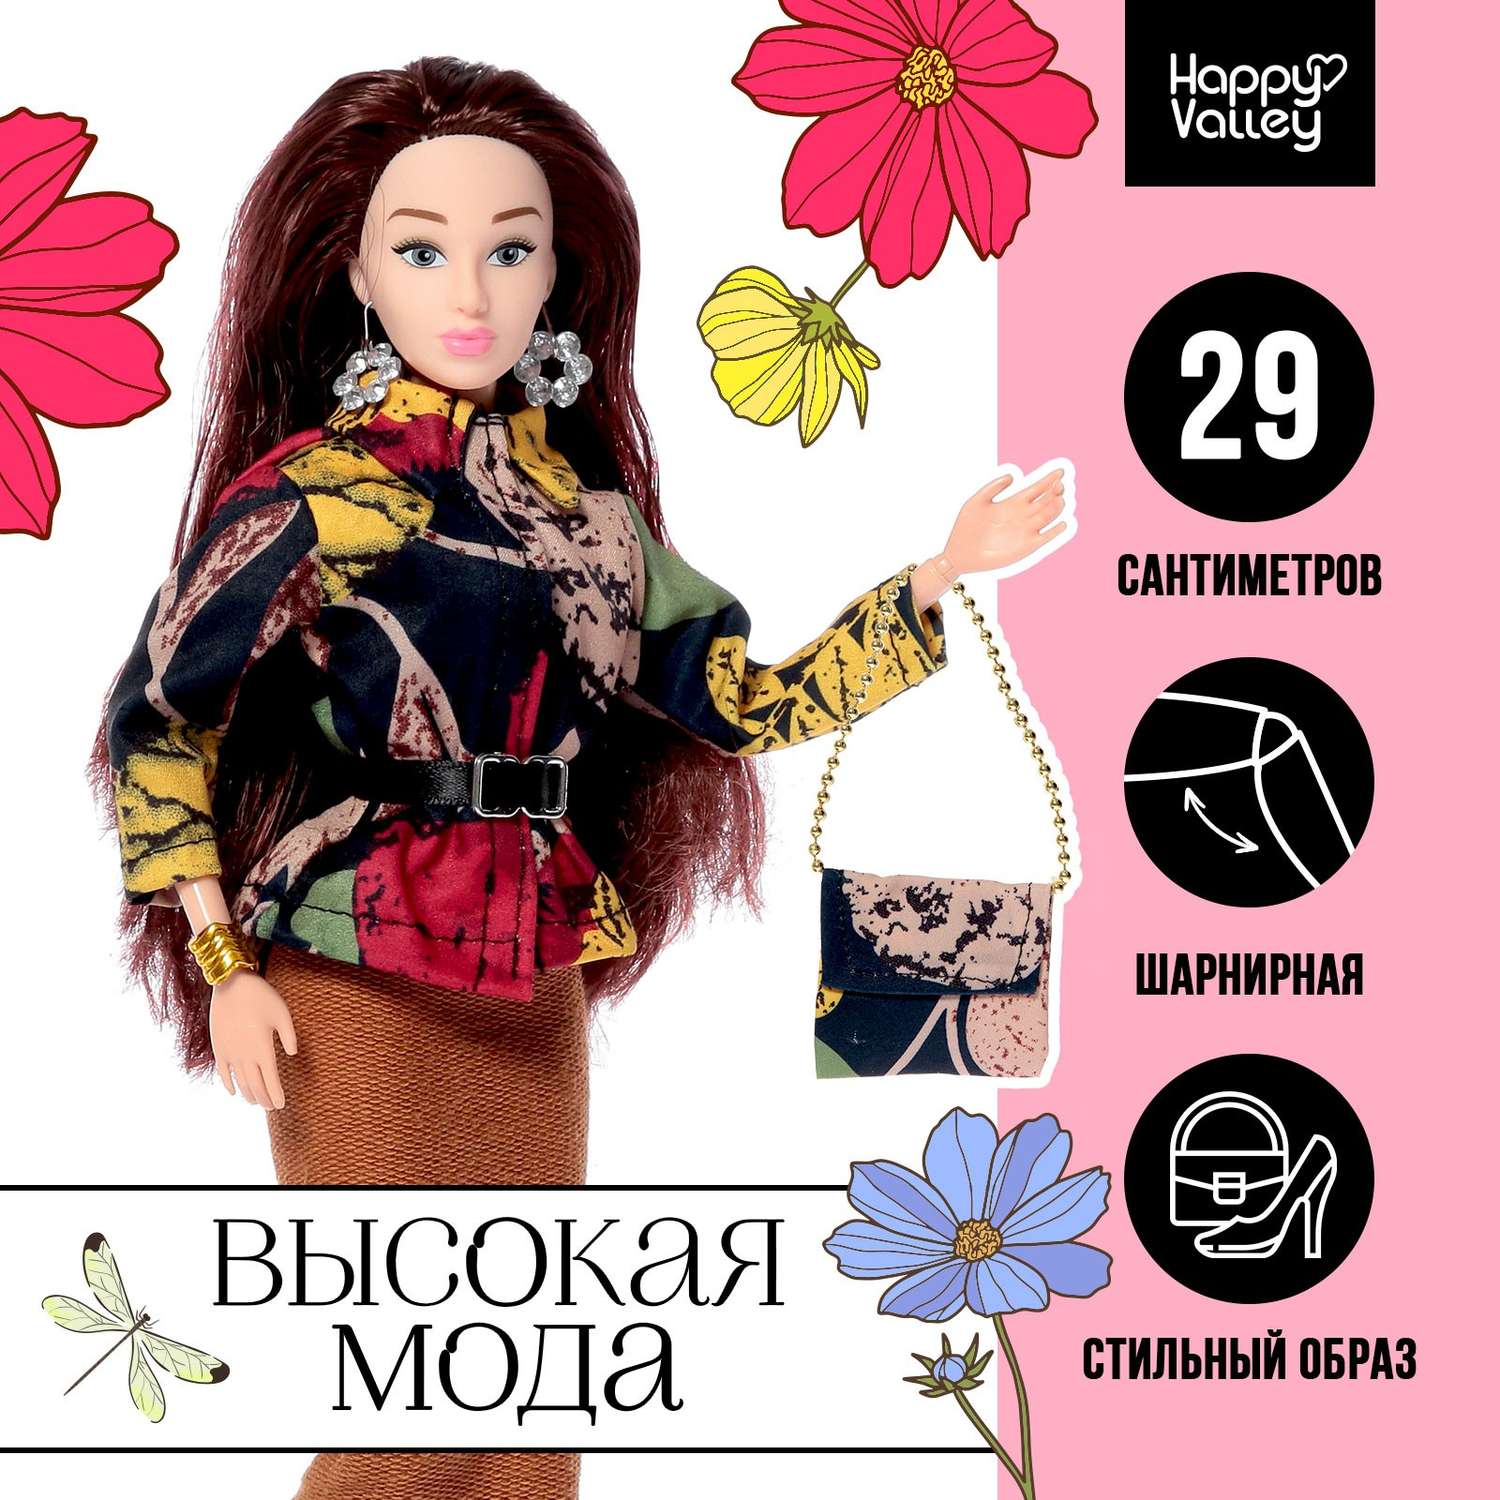 Кукла-модель Happy Valley Шарнирная «Высокая мода» цветочный стиль 7601135 - фото 2